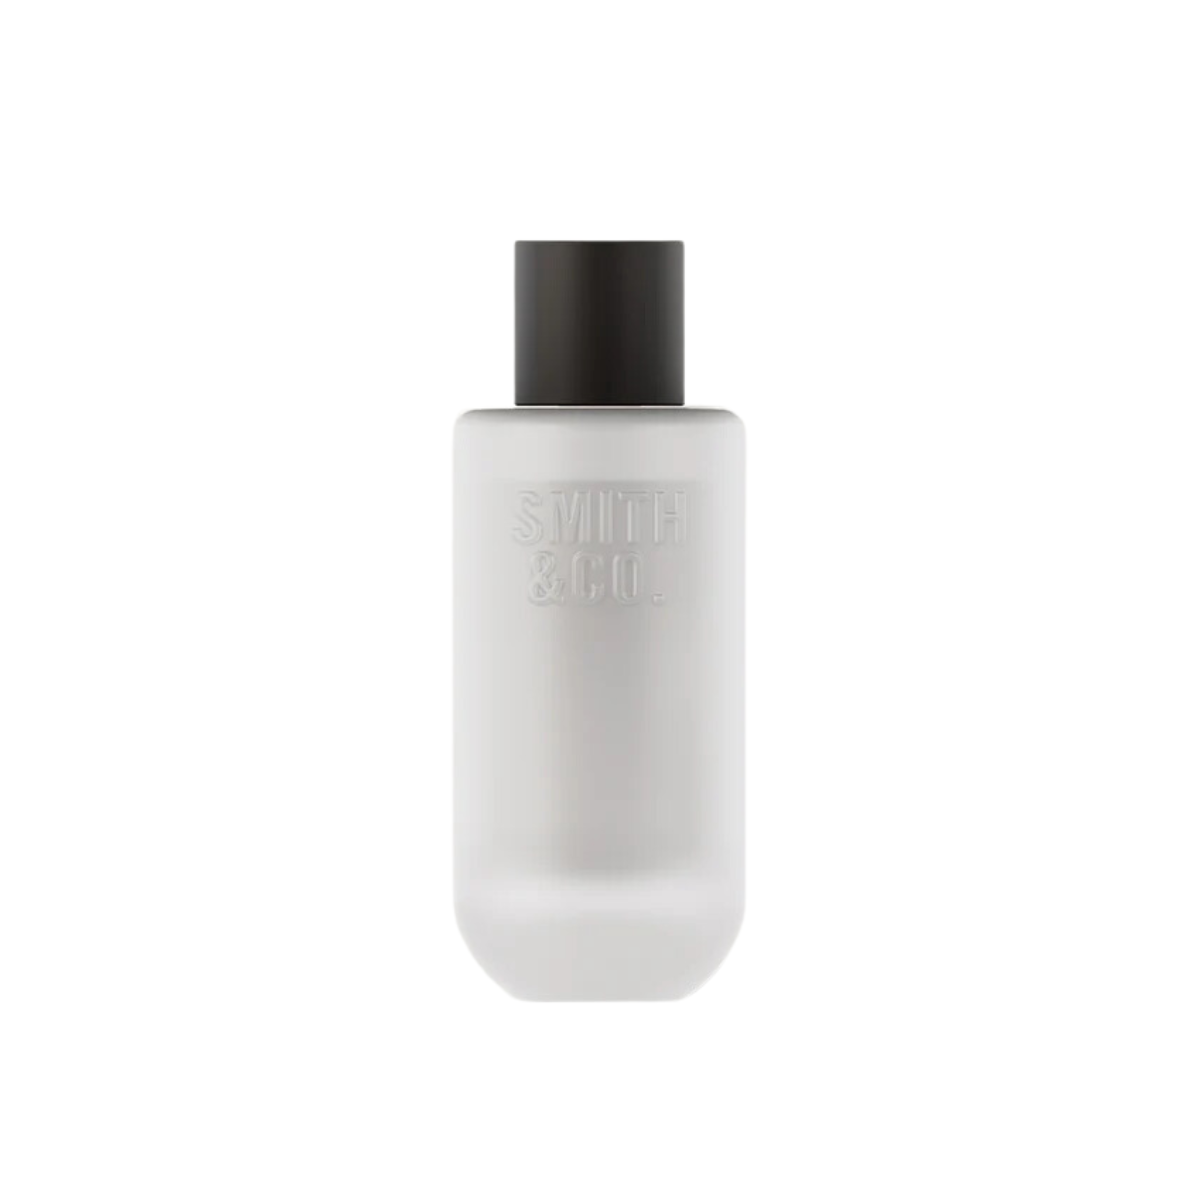 Smith & Co Room Spray 100ml - Tonka & White Musk